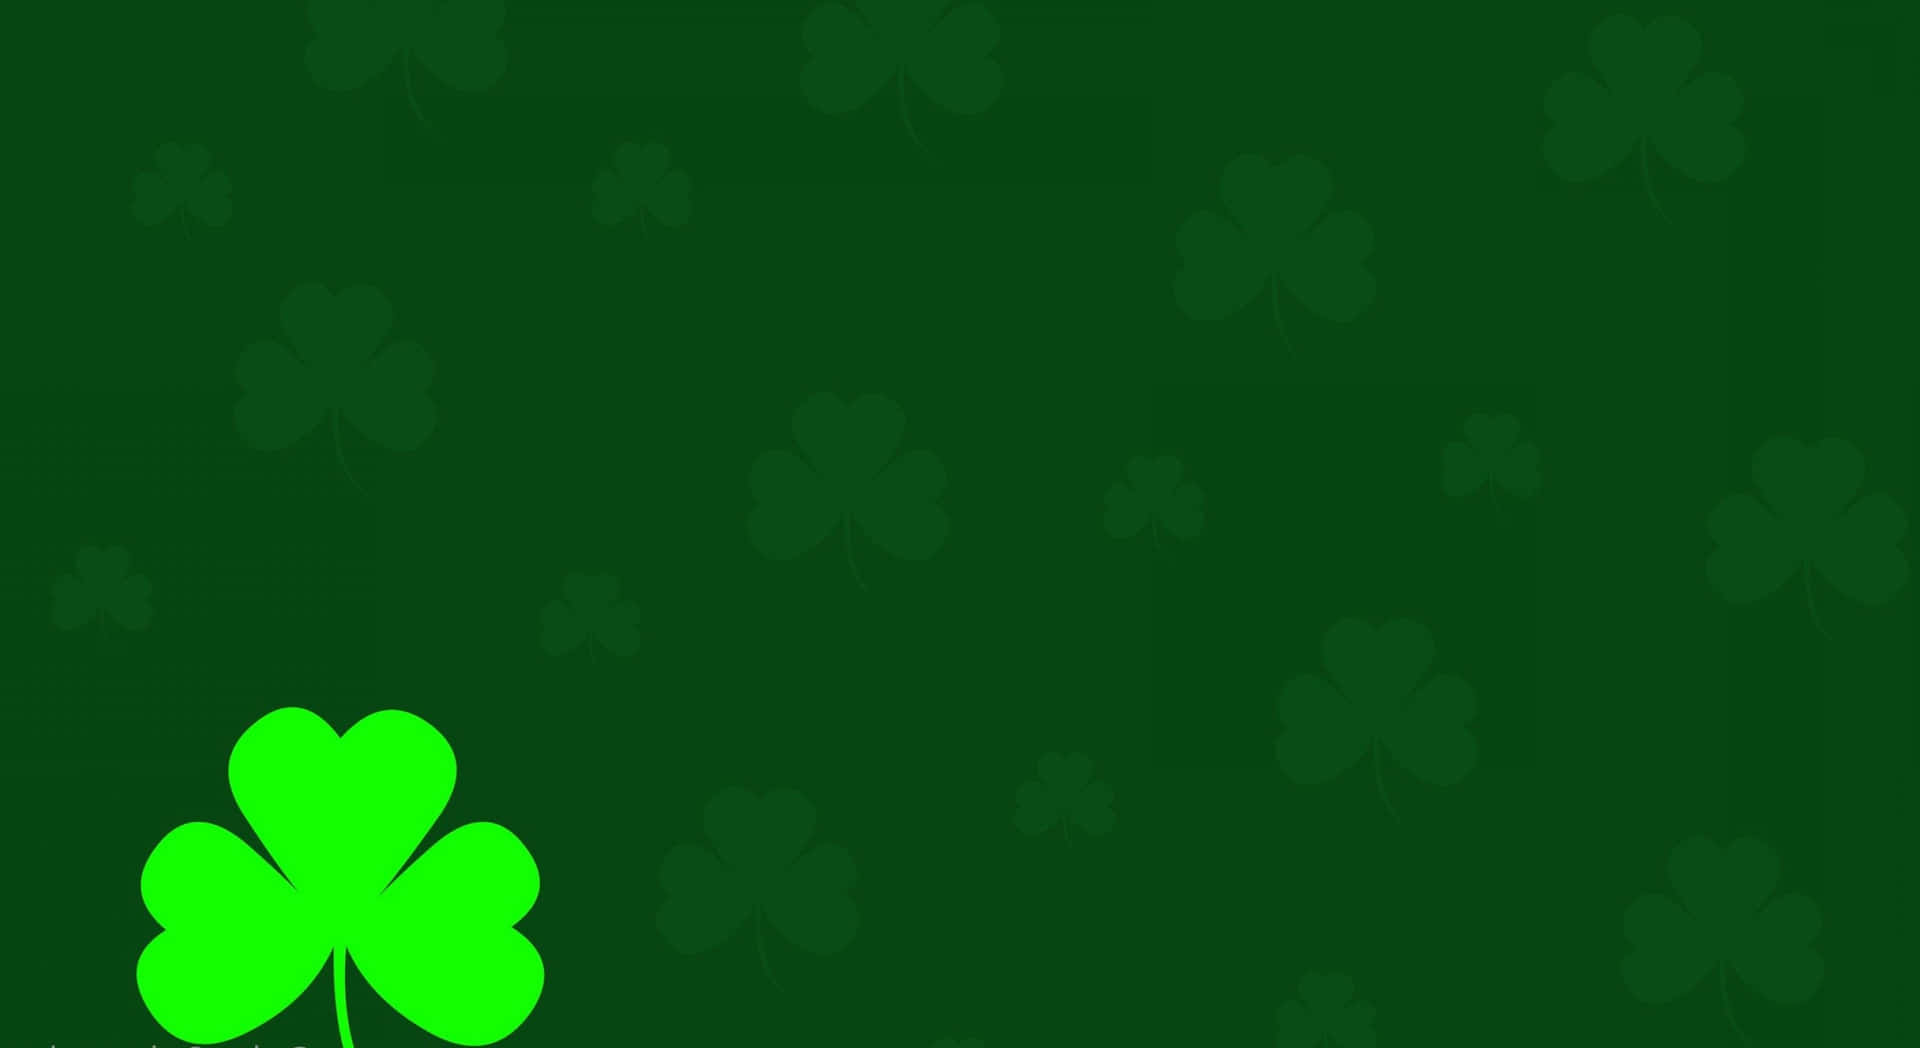 Green Leaf Shamrock Background Design Background